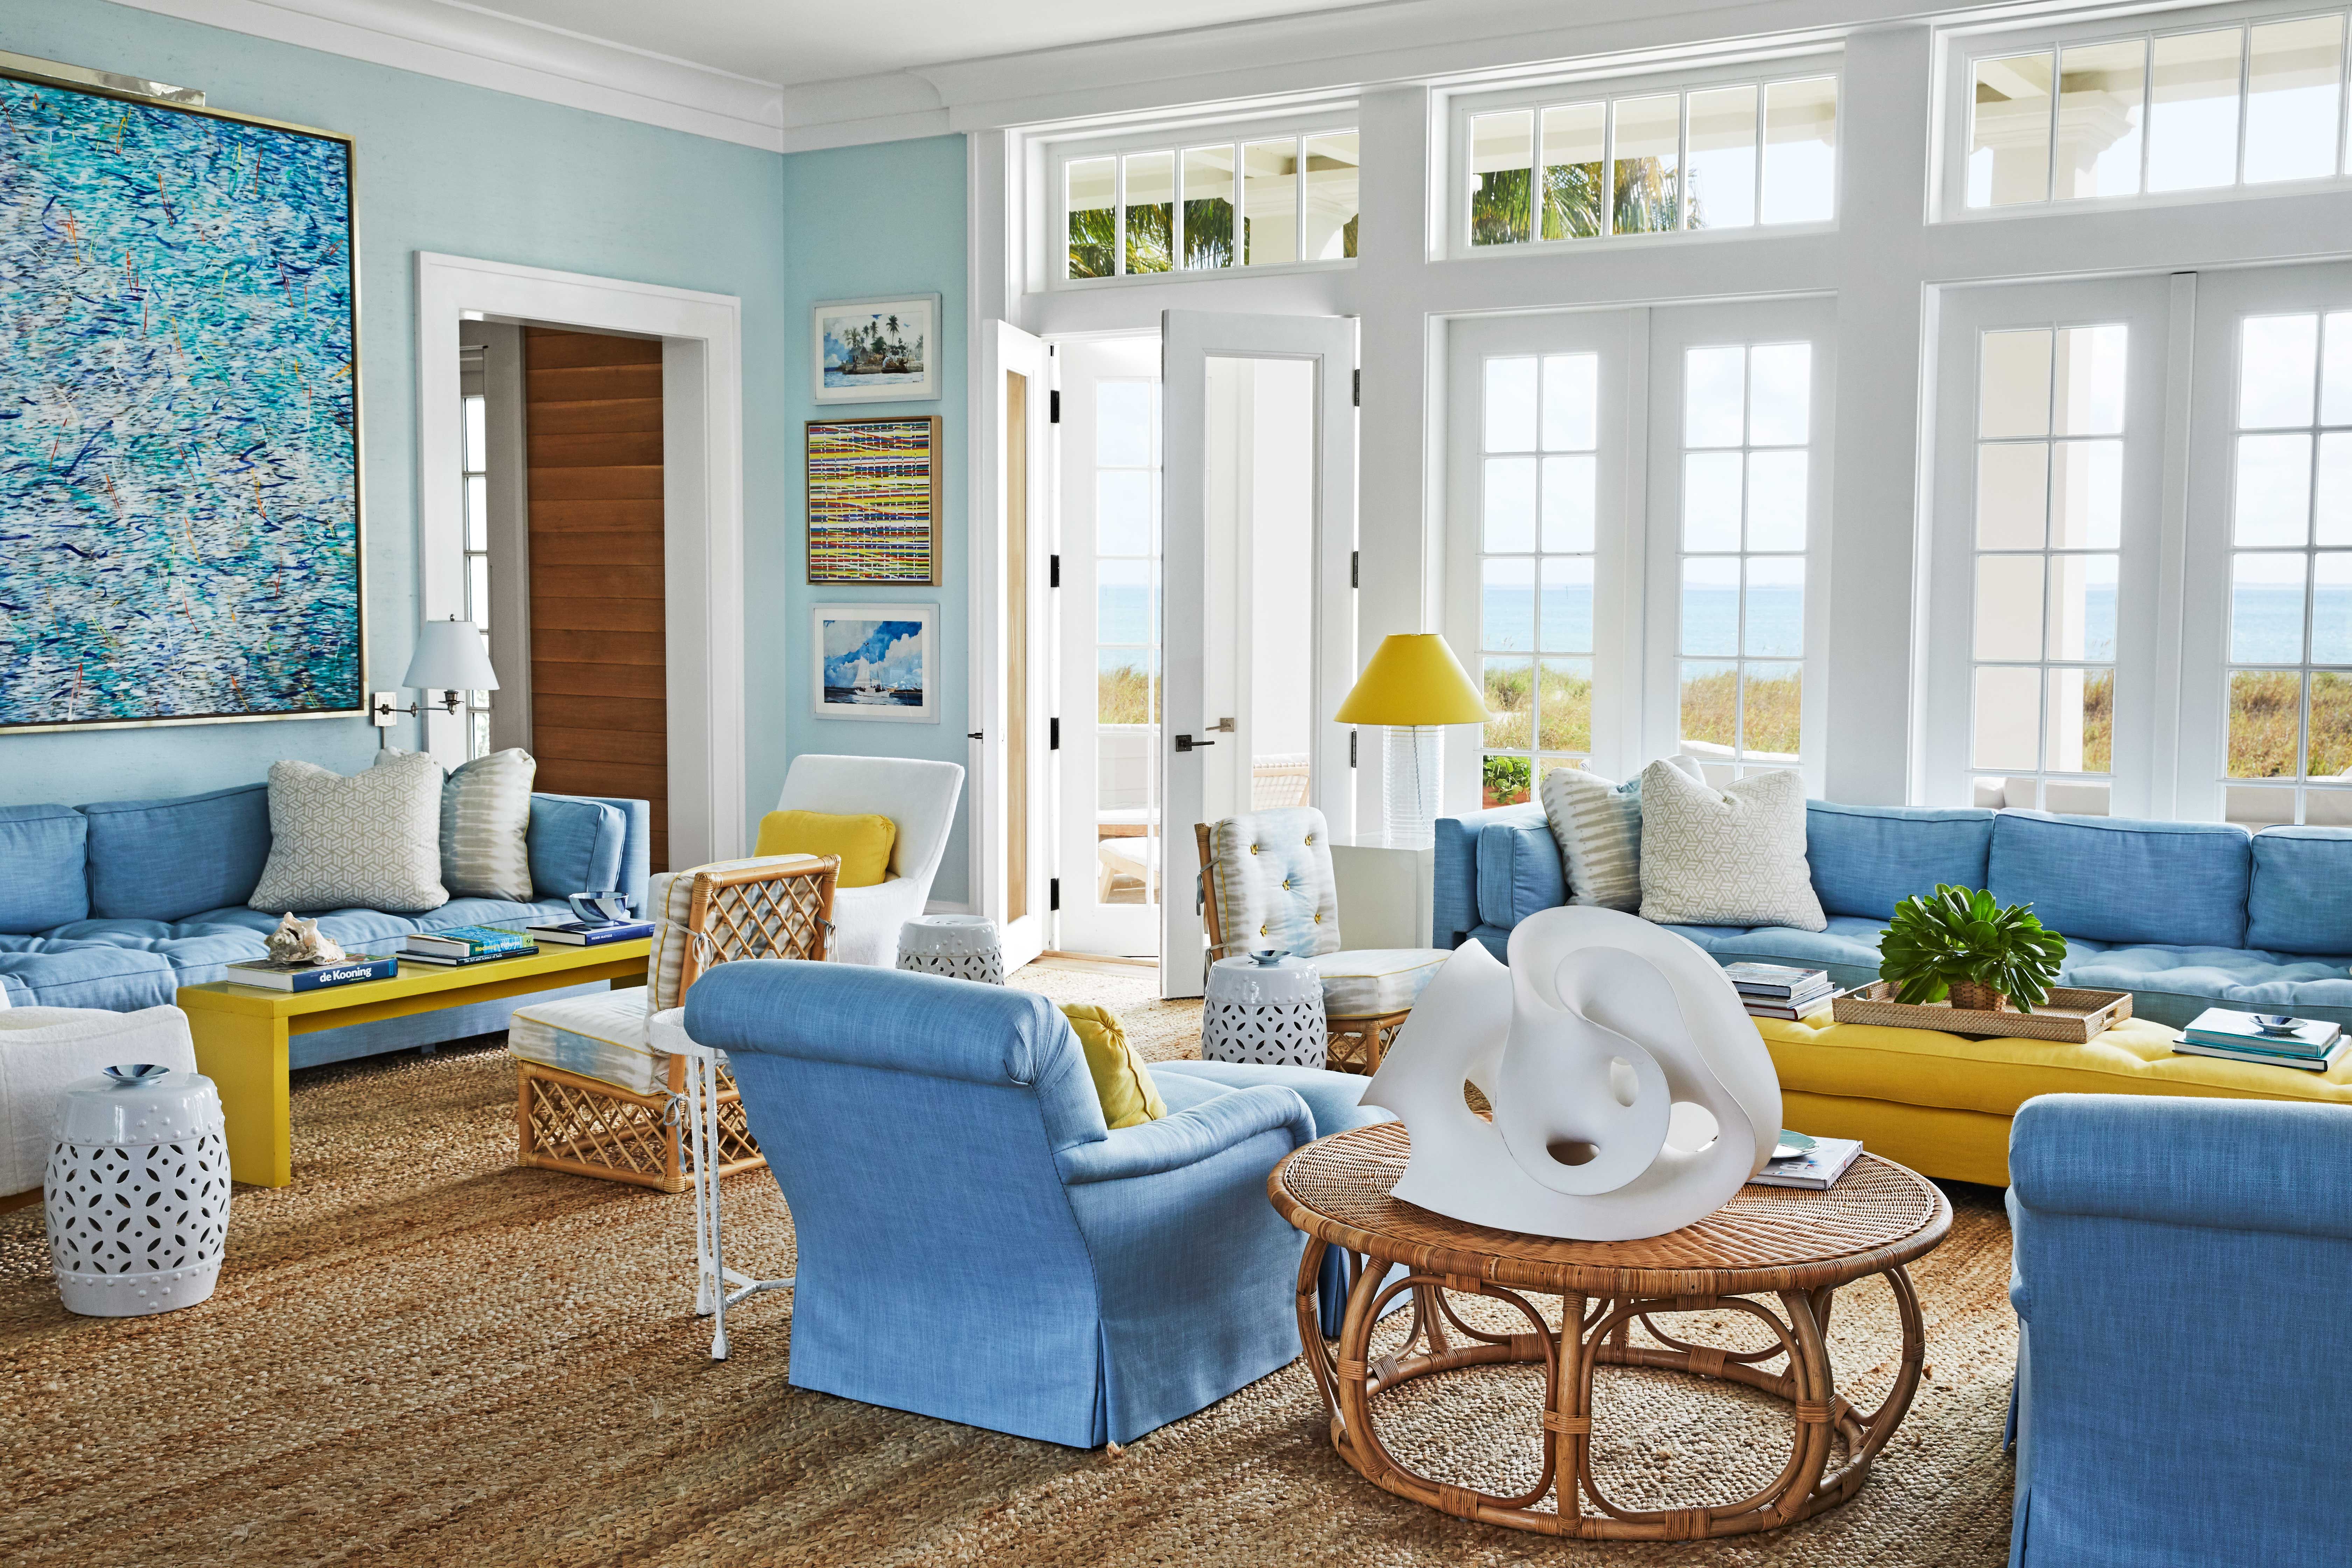 Best 40 Living Room Paint Colors 2021, Living Room Paint Ideas Images